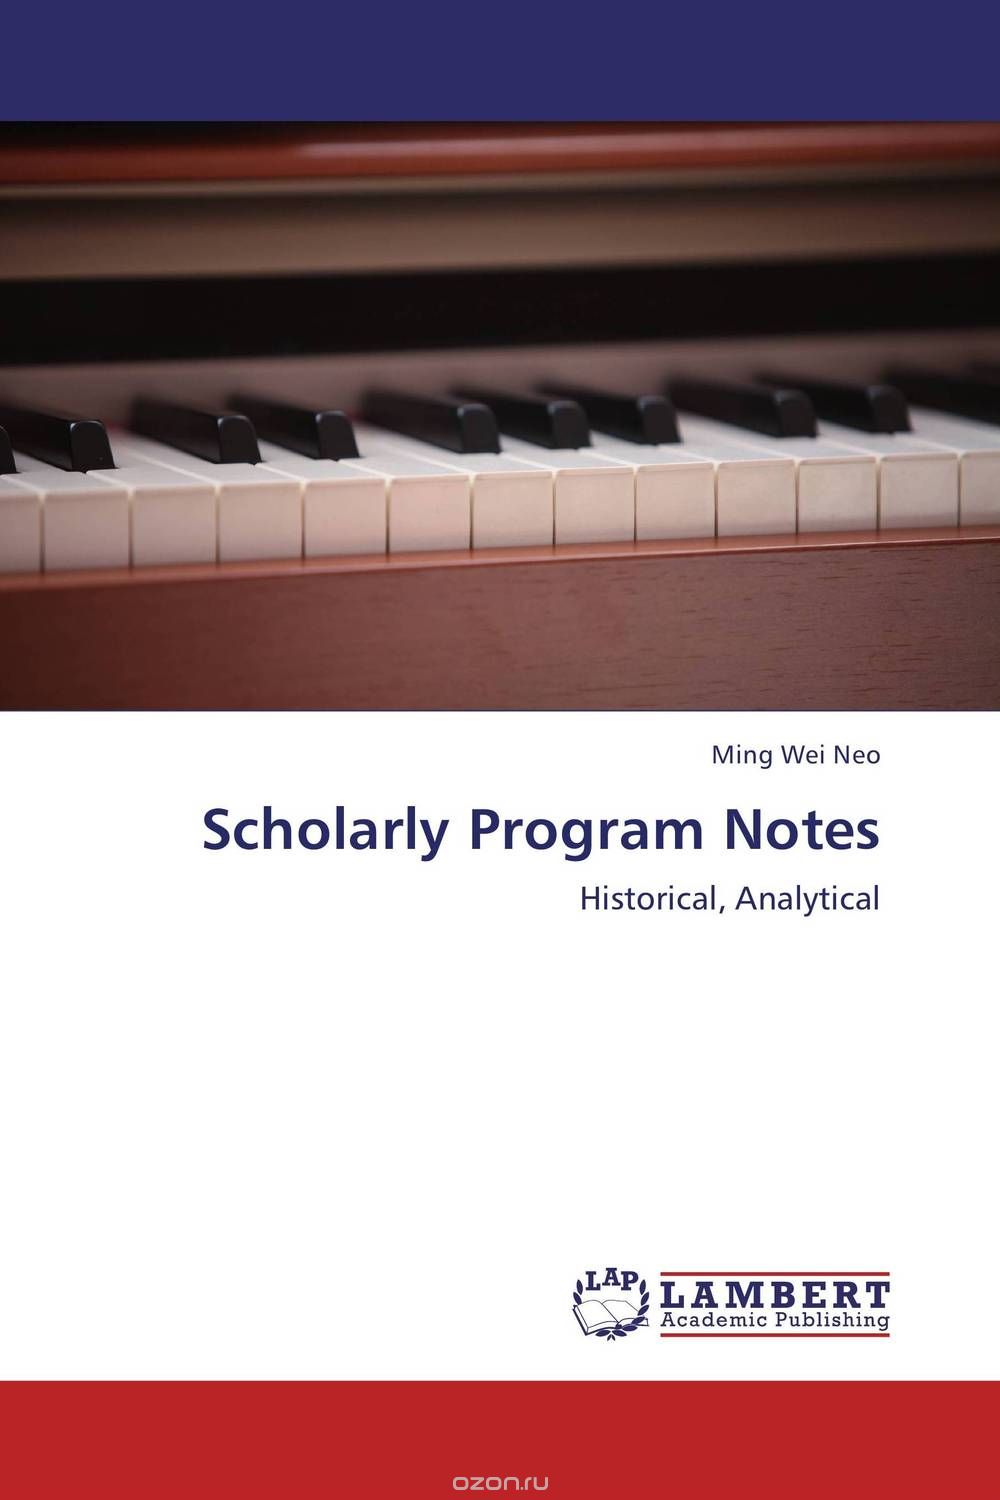 Скачать книгу "Scholarly Program Notes"